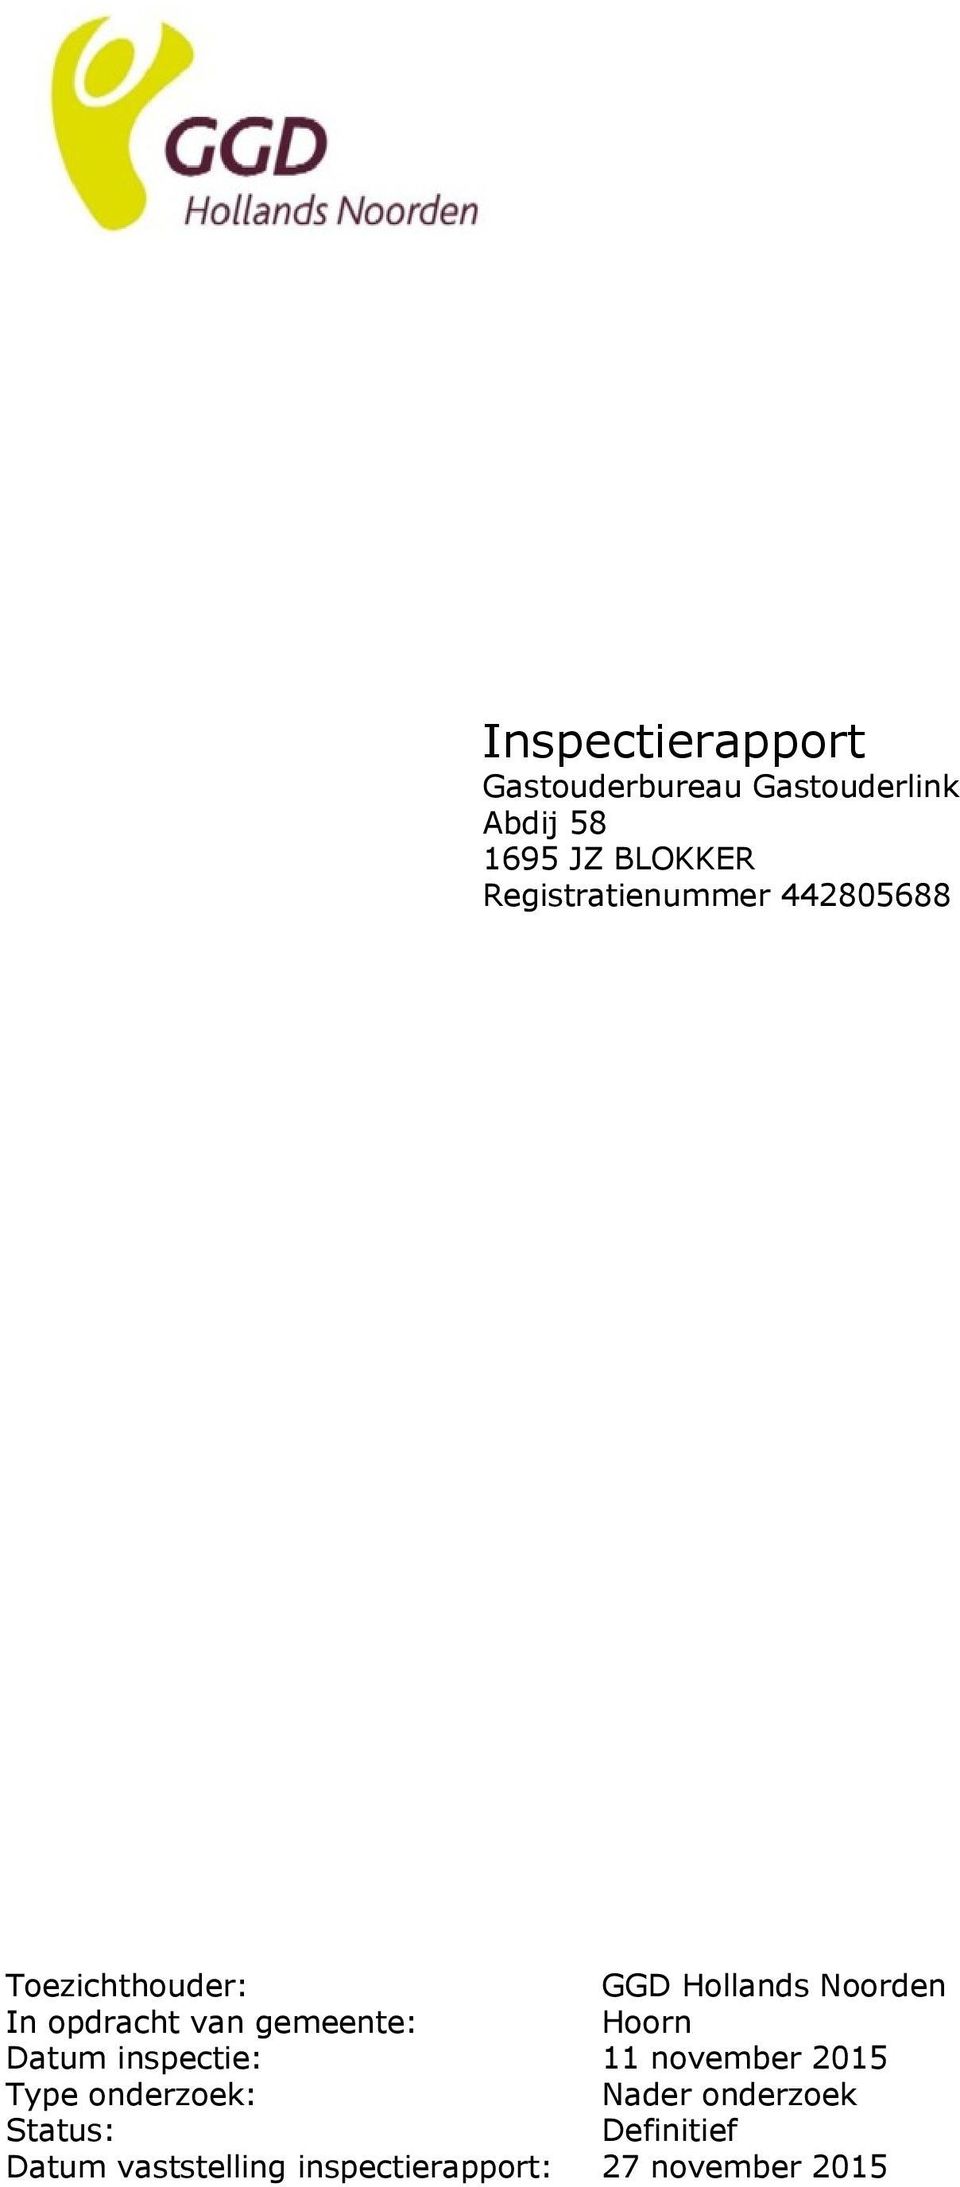 van gemeente: Hoorn Datum inspectie: 11 november 2015 Type onderzoek: Nader